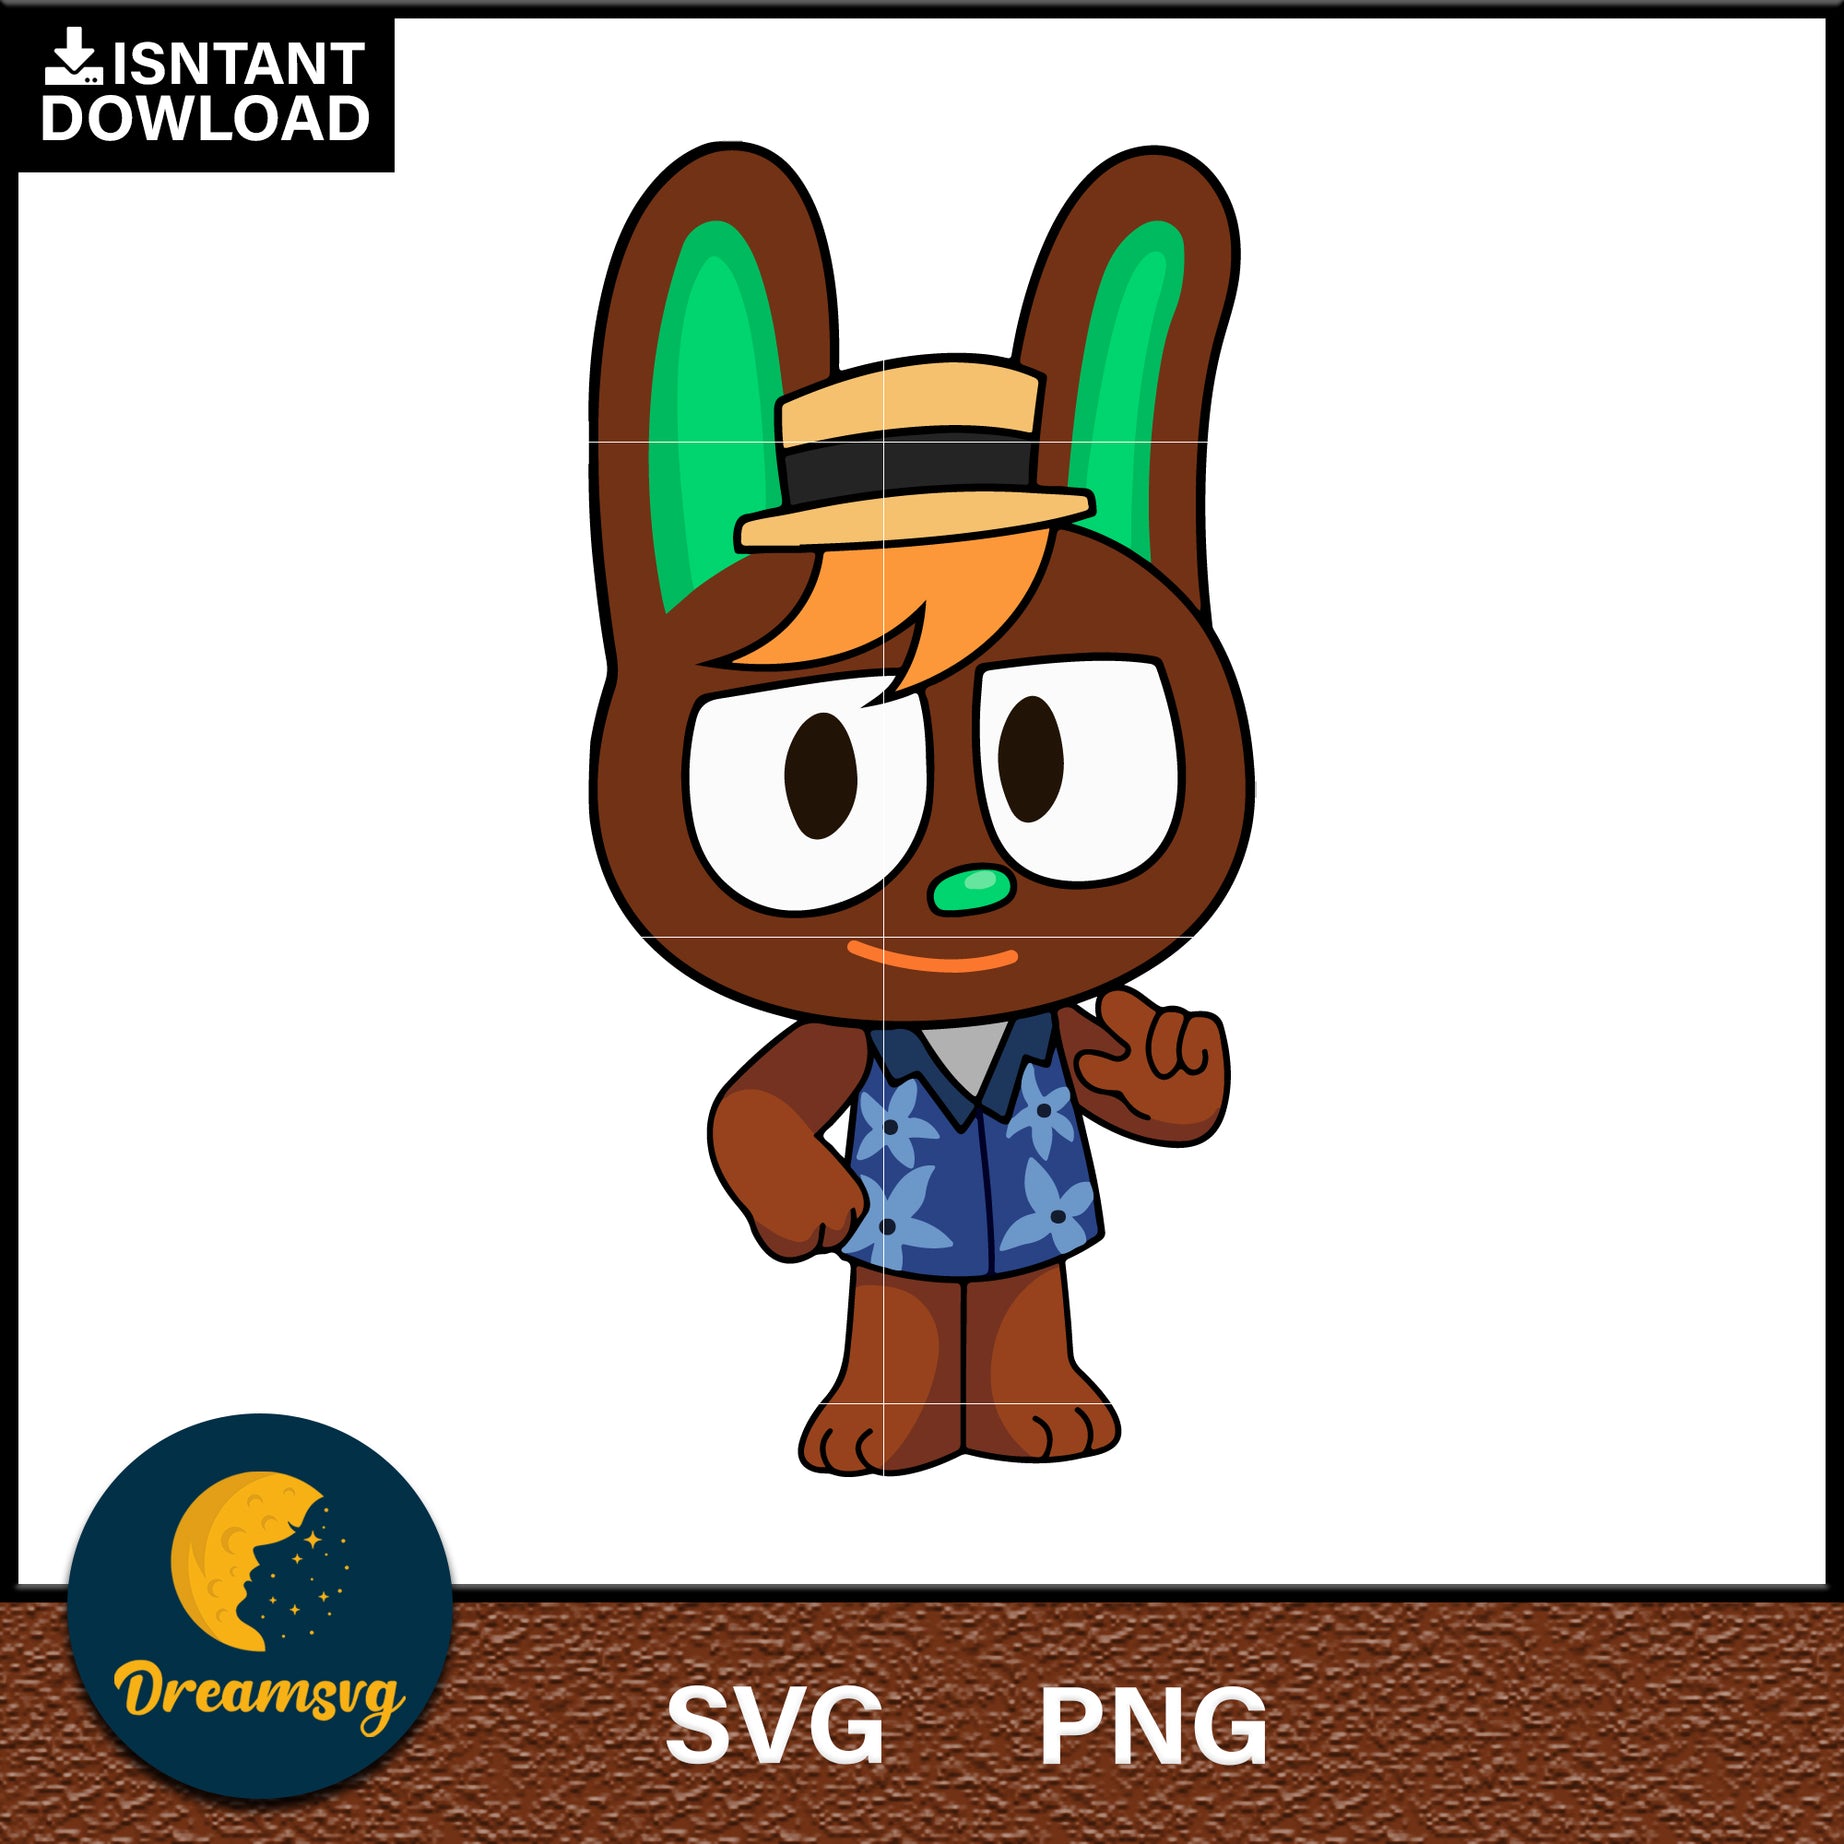 OHare Animal Crossing Svg, Animal Crossing Svg, Animal Crossing Png, Cartoon svg, svg, png digital file